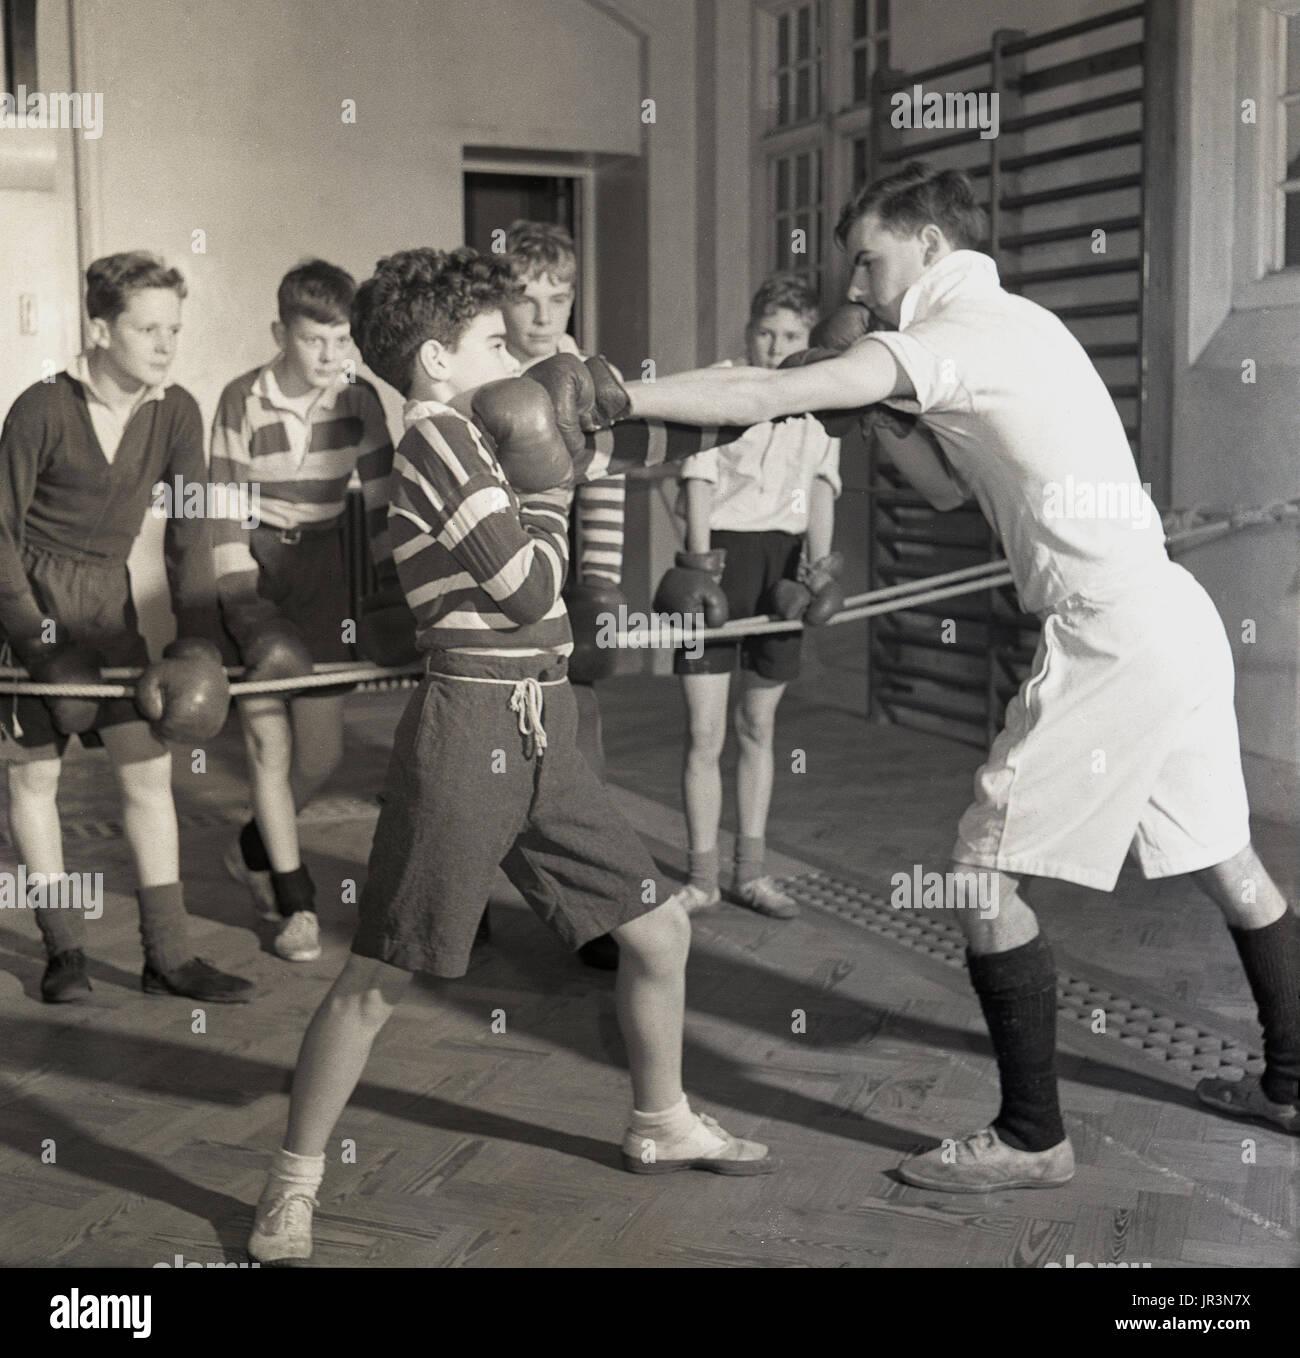 1948, Inghilterra, un giovane ragazzo di scuola che viene insegnato difesa nello sport della boxe da un insegnante di sport maschile, mentre altri ragazzi guardano e imparano, Hailleybury Public School, l'unica scuola di imbarco di un ragazzo tradizionale britannico. Foto Stock